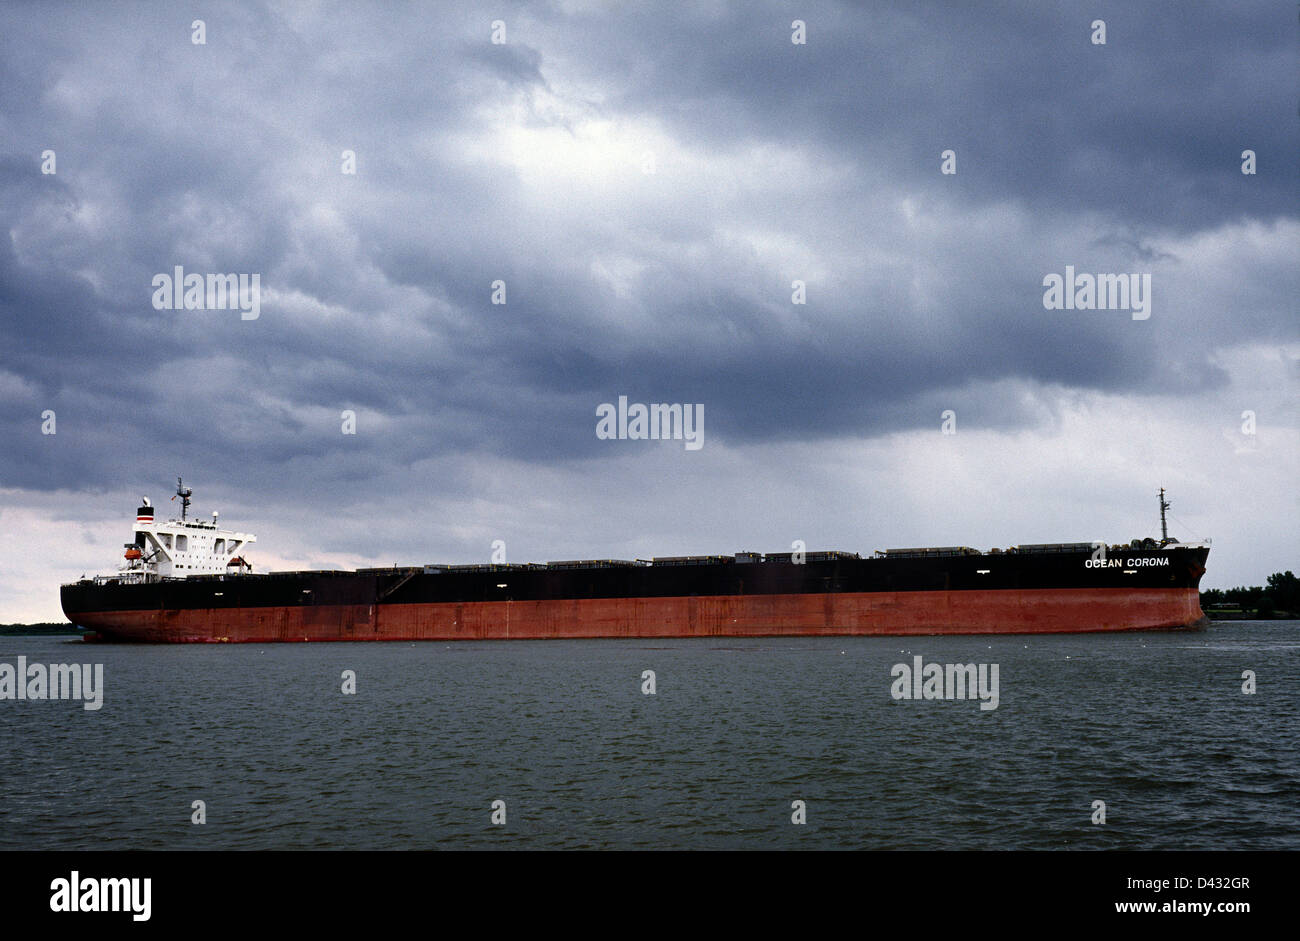 Panama registered bulk carrier Ocean Corona leaving the port of Hamburg. Stock Photo